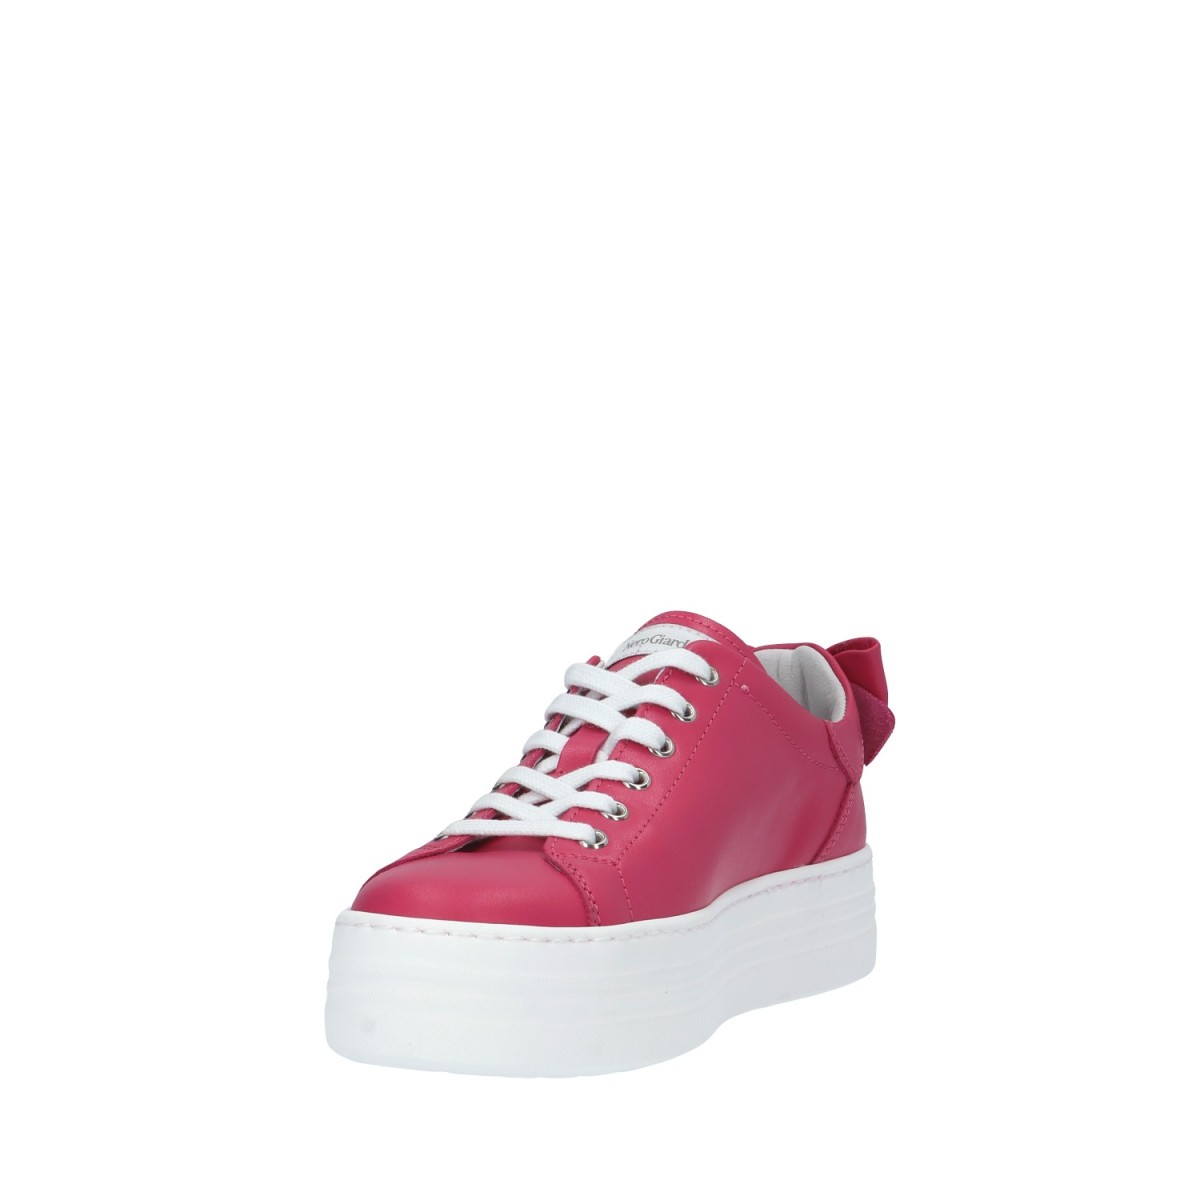 Nerogiardini Sneaker Fuxia Gomma E406520D